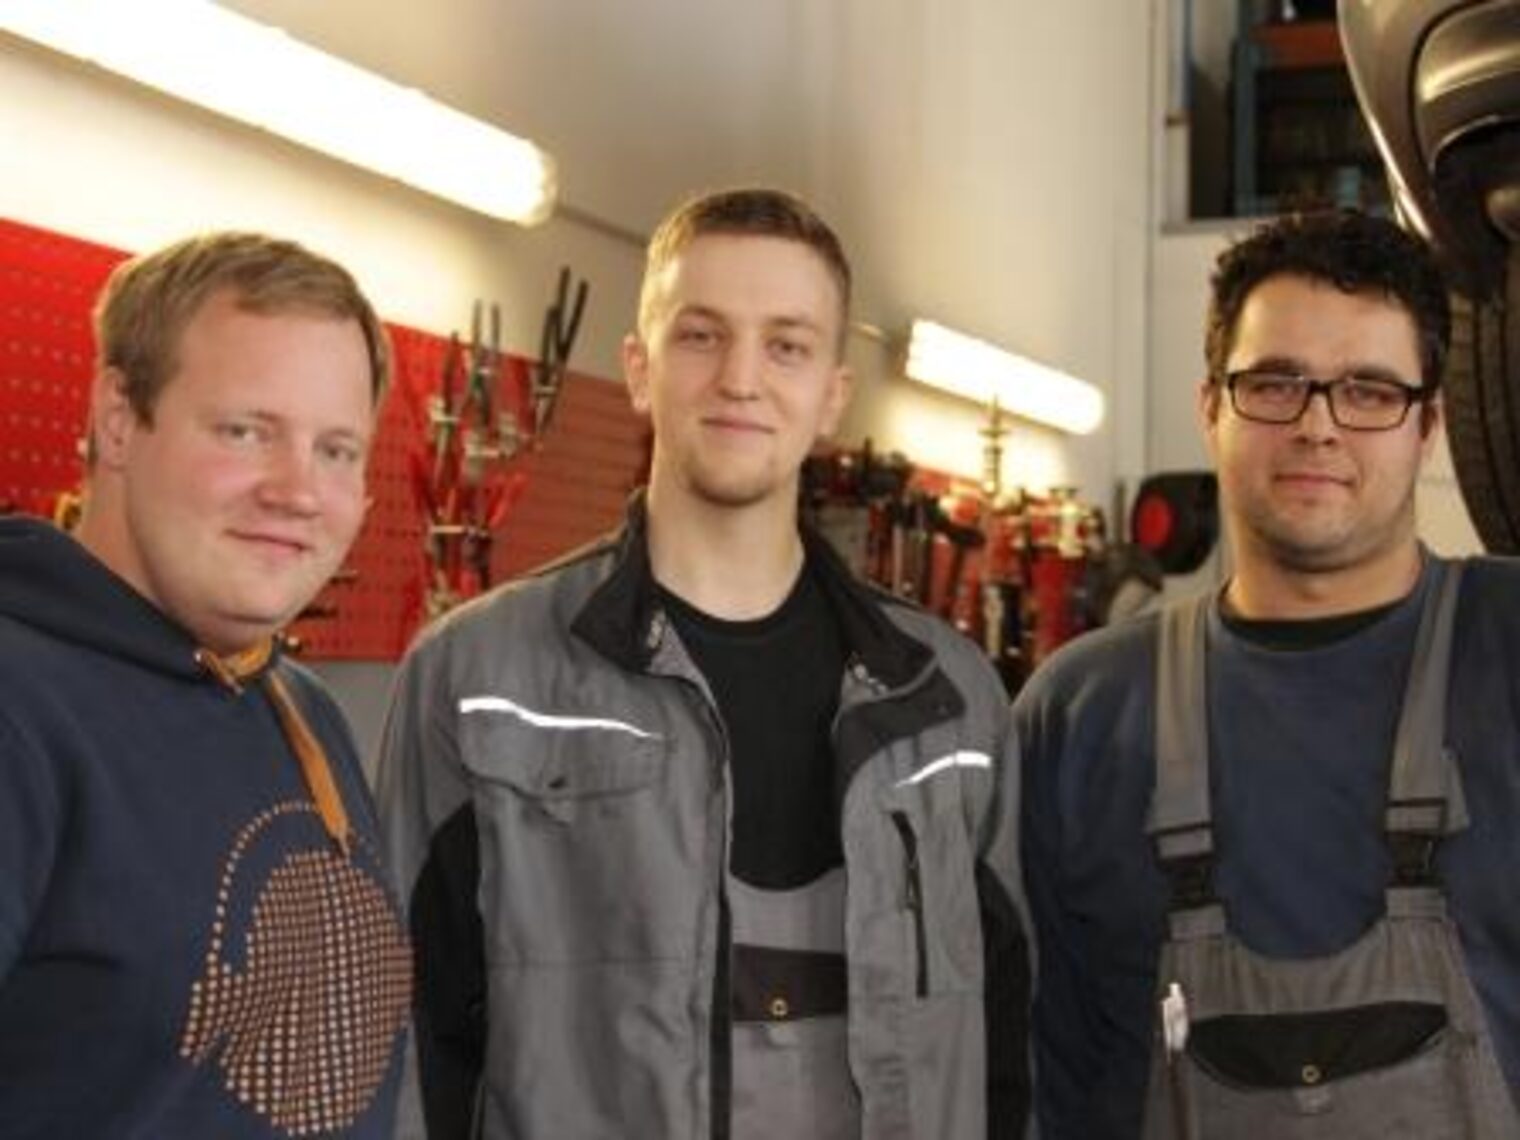 Unzufrieden beim Studium: Jetzt haben sie ihren Beruf im Kfz-Handwerk gefunden: Martin Creutzburg, Philipp Ponick und Max Menges